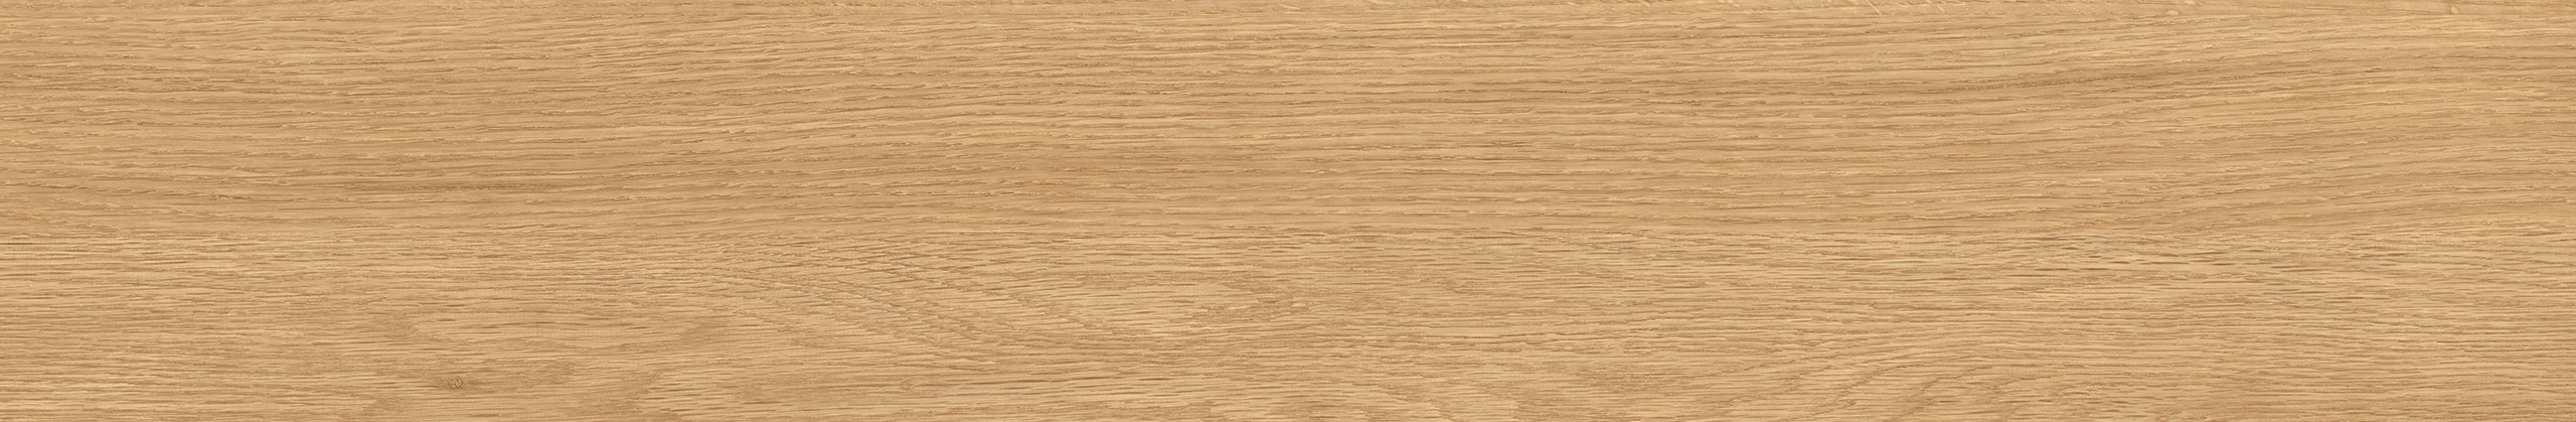 EW1433-15 川島織物セルコン 床タイル エグザウッド ソネットオーク 川島織物セルコン フロアタイル